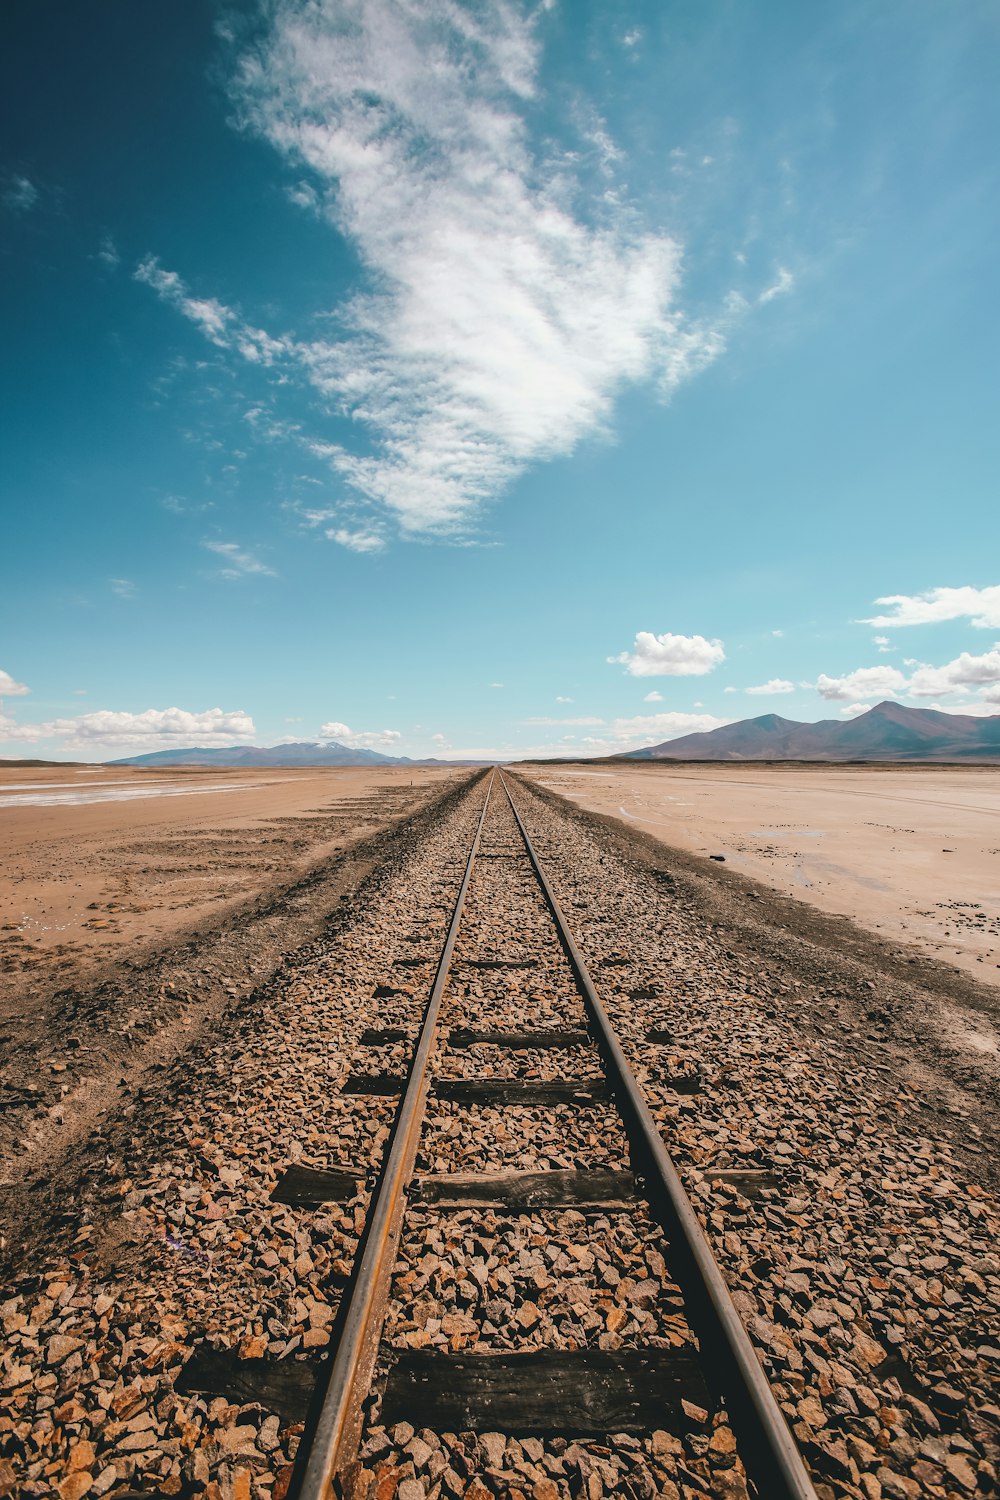 riel de tren marrón en el desierto bajo el cielo azul y blanco